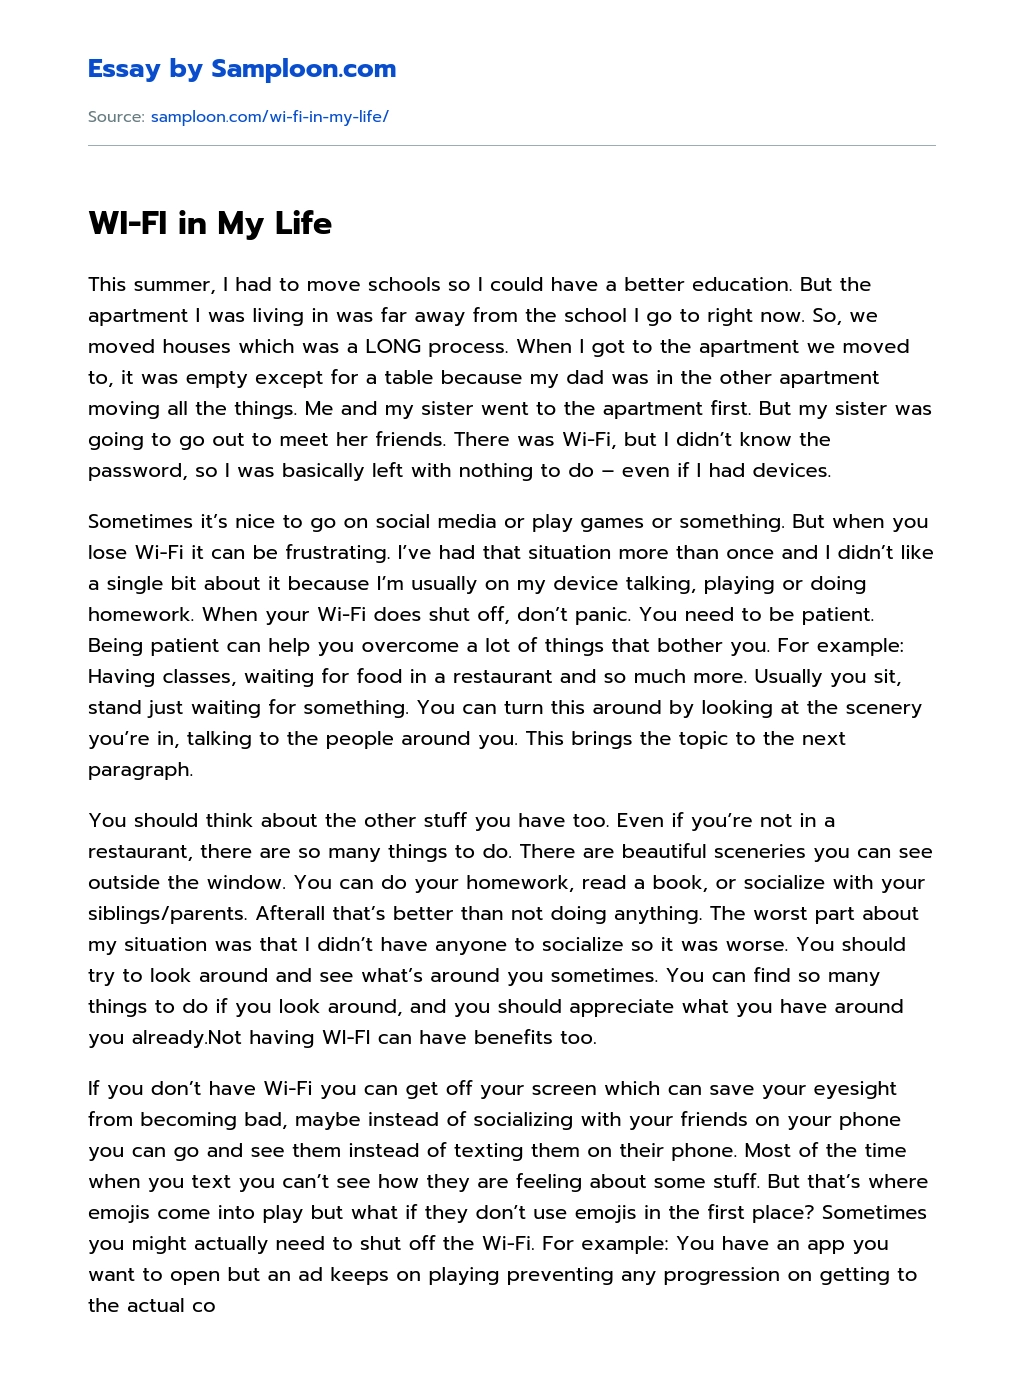 WI-FI in My Life essay